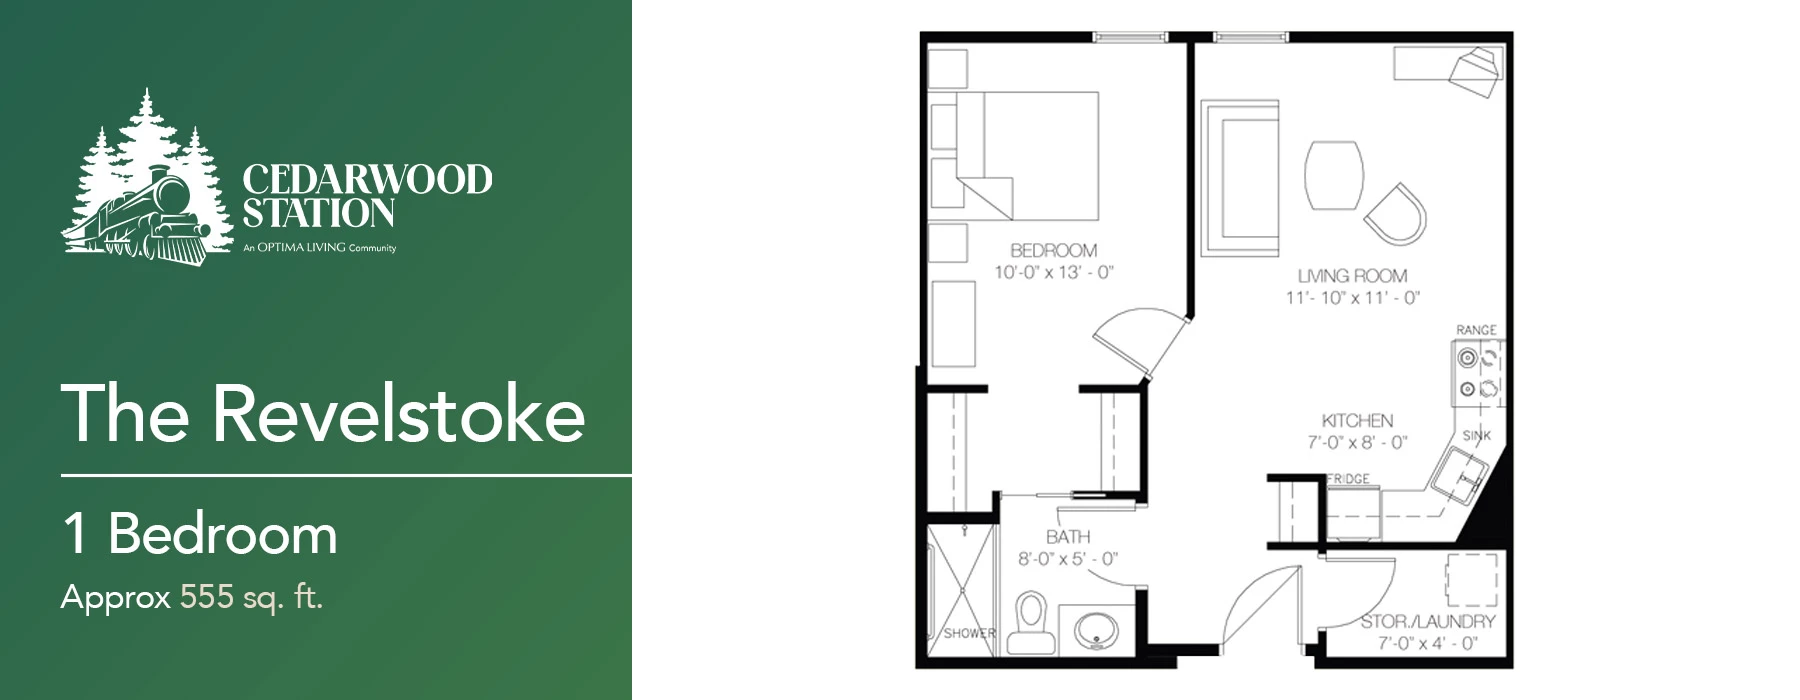 The Revelstoke 1 bedroom floor plan